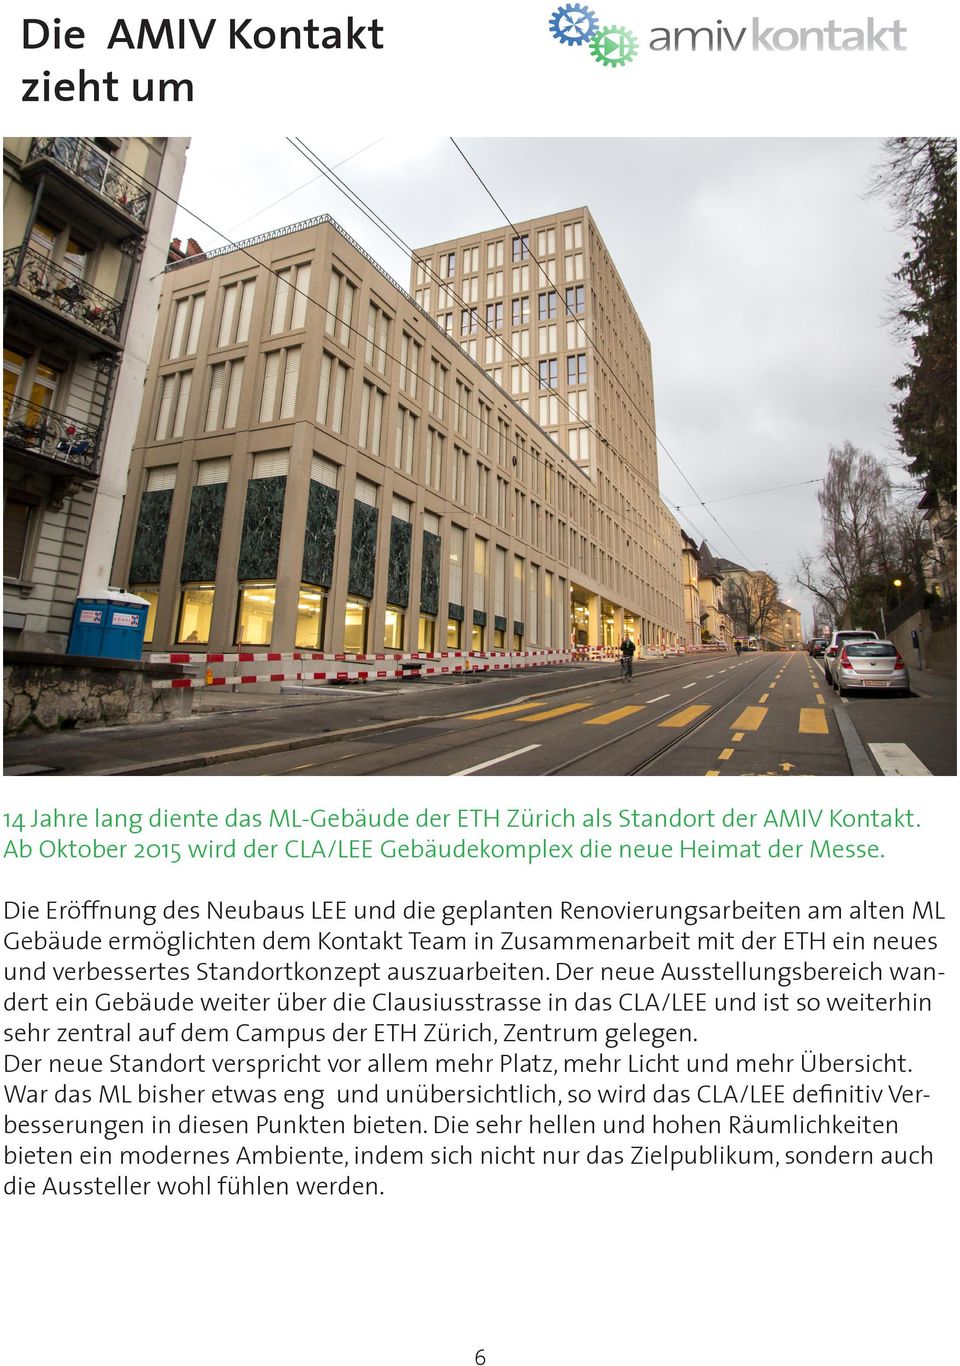 auszuarbeiten. Der neue Ausstellungsbereich wandert ein Gebäude weiter über die Clausiusstrasse in das CLA/LEE und ist so weiterhin sehr zentral auf dem Campus der ETH Zürich, Zentrum gelegen.